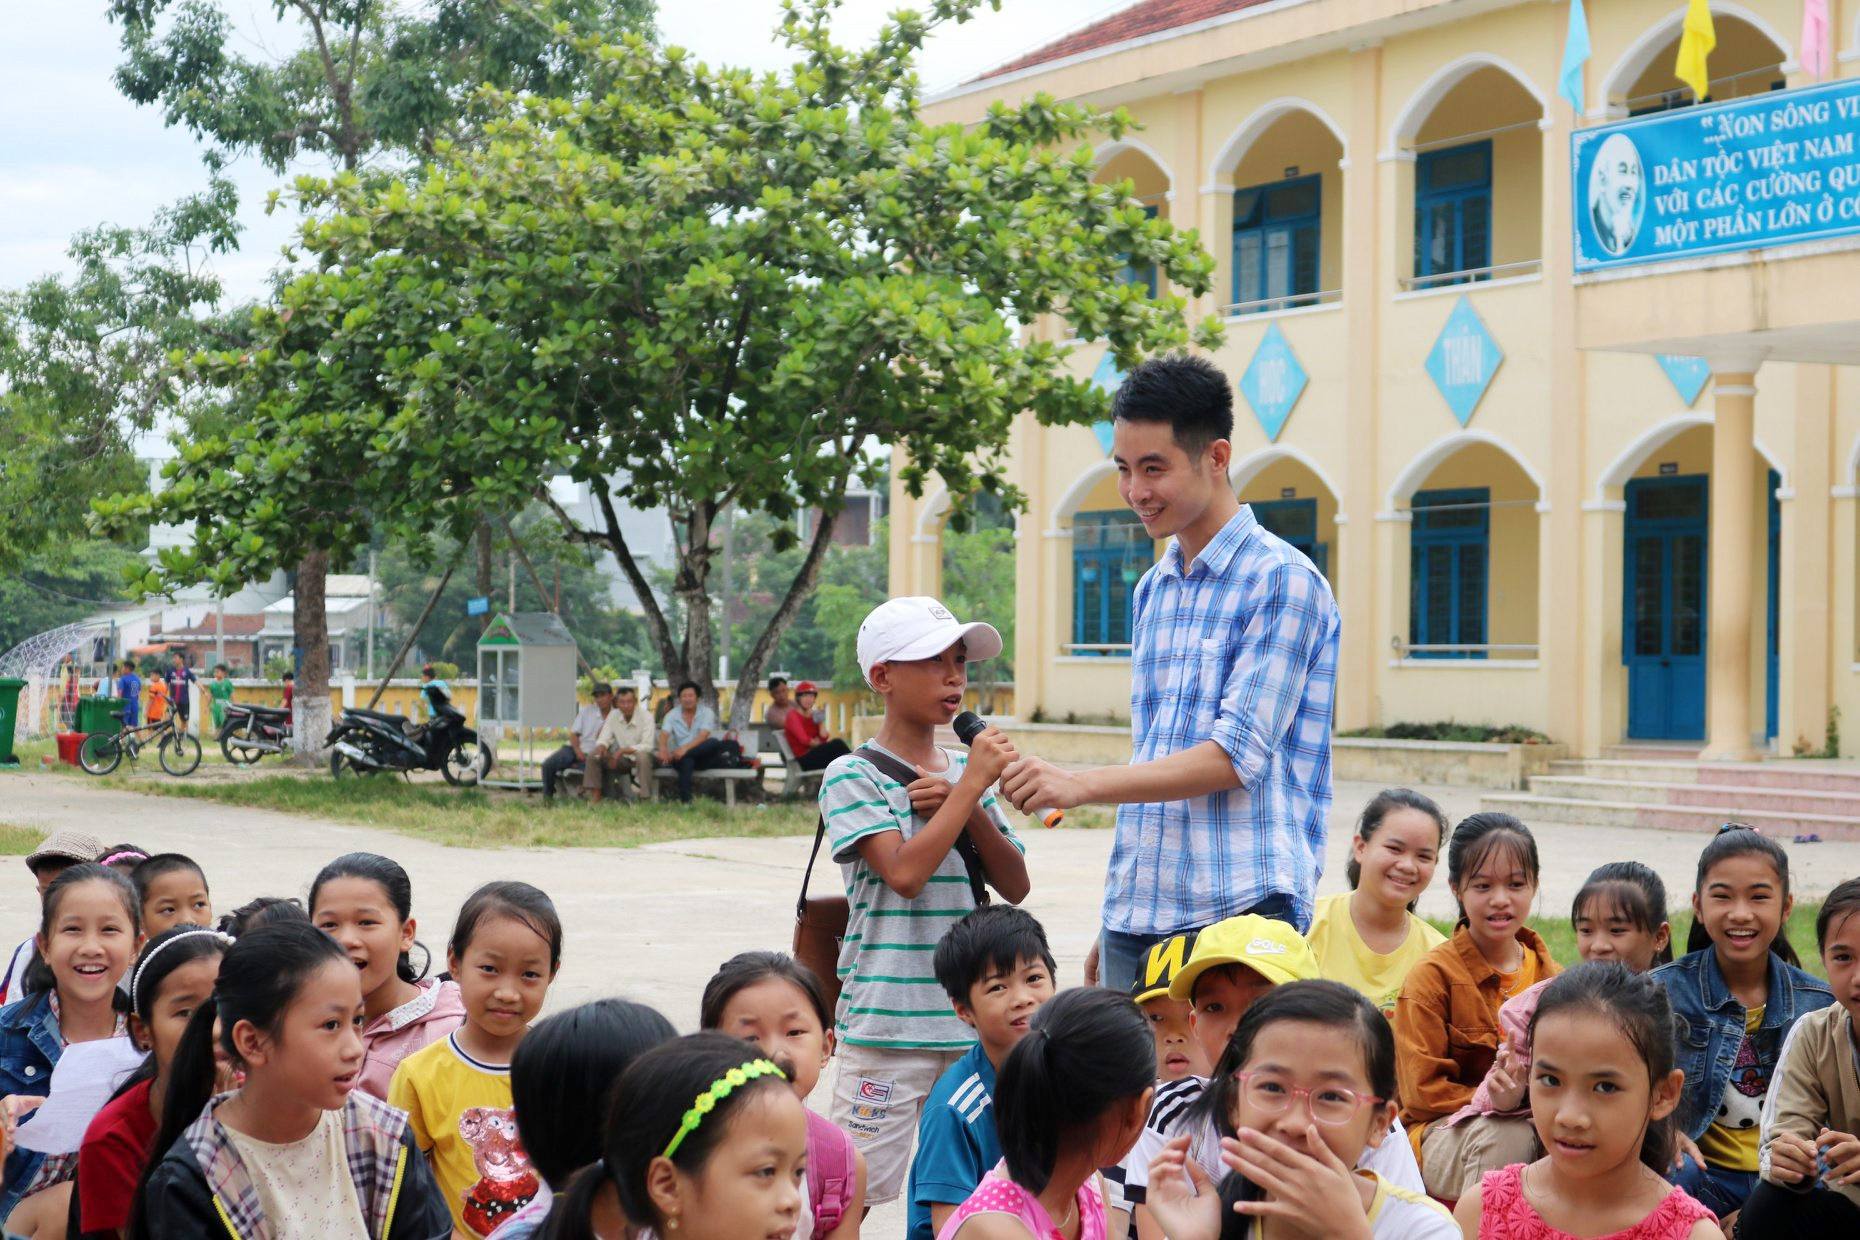 Anh Bảo giao lưu với các em nhỏ trong một dịp khai giảng “Lớp học miễn phí cho trẻ em nghèo”. Ảnh: QUỐC BẢO